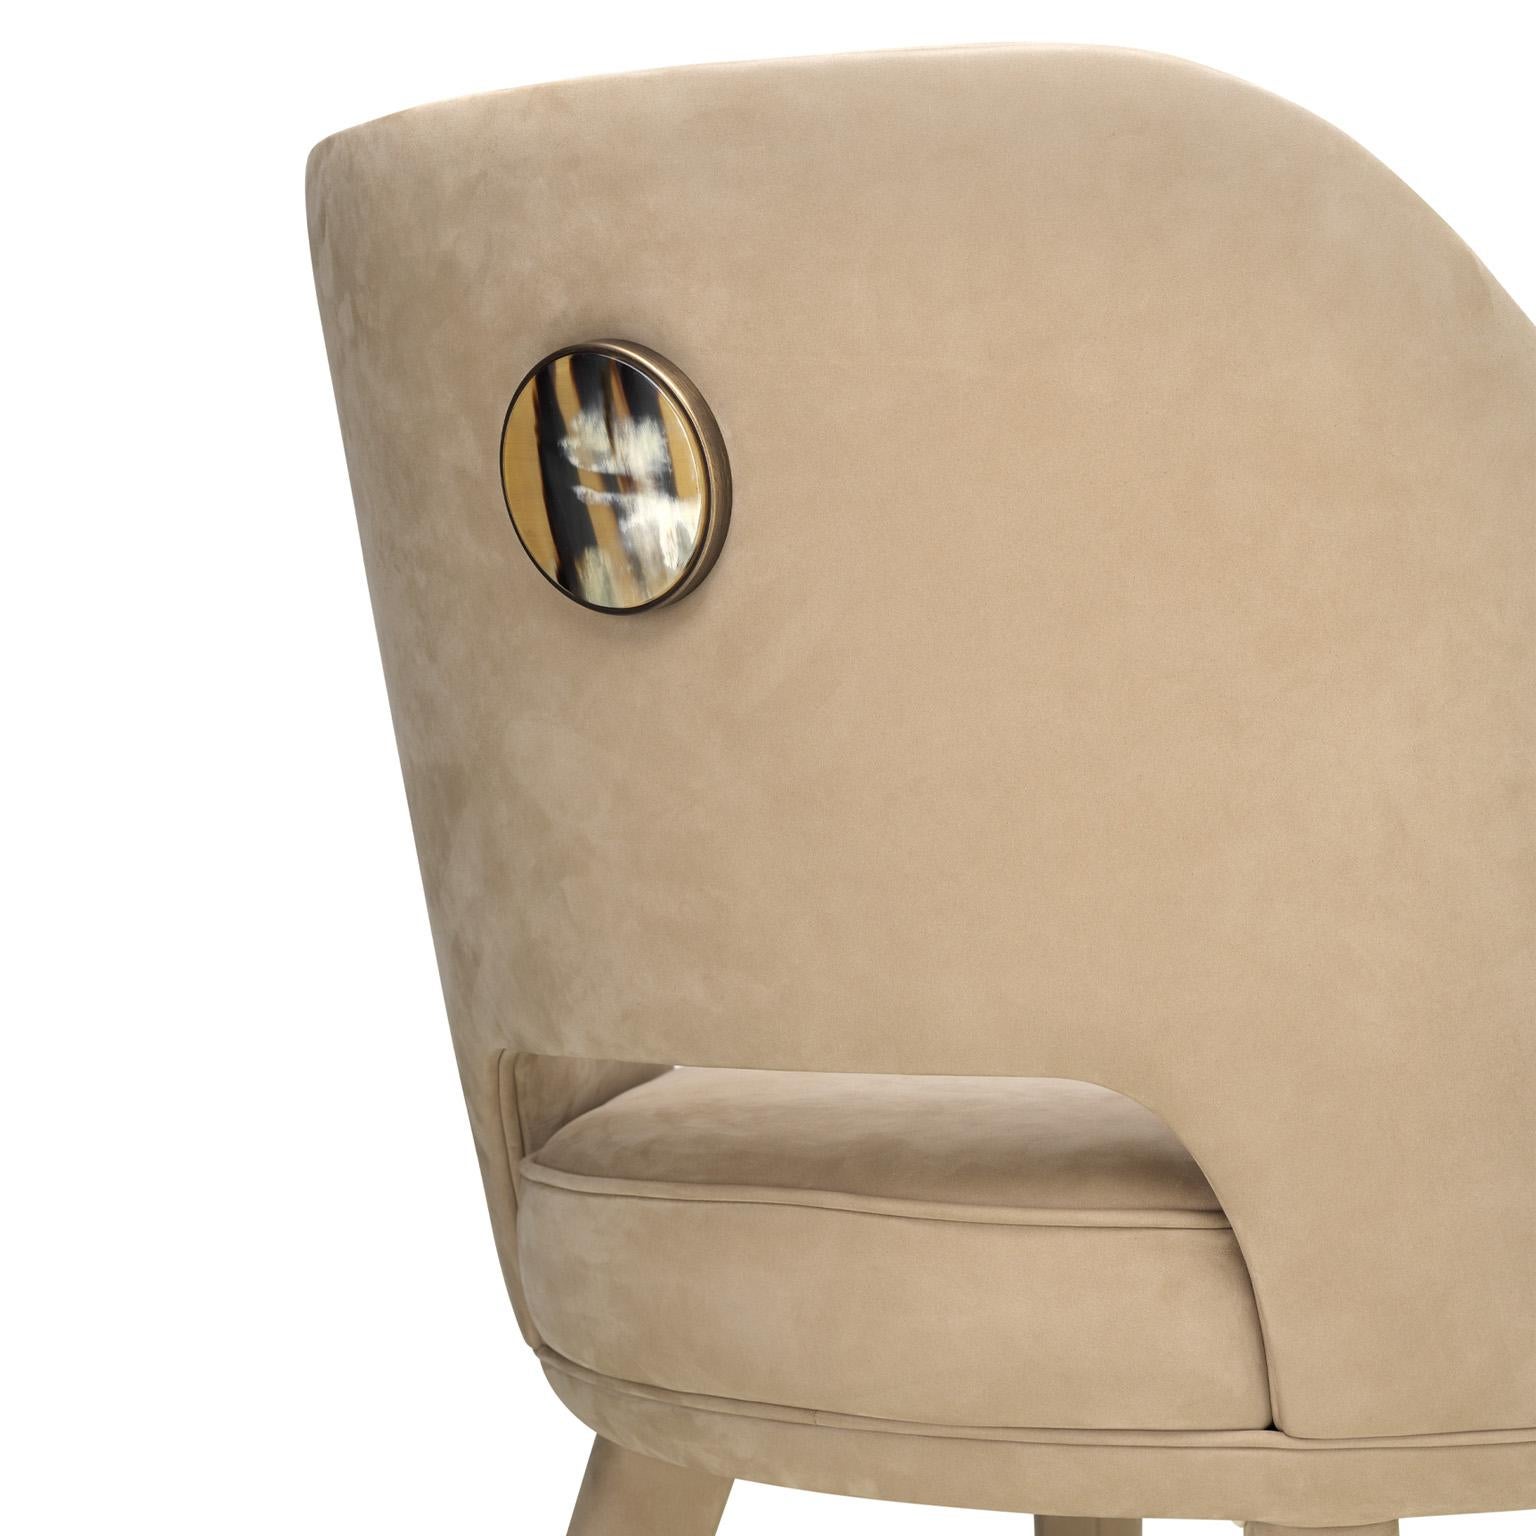 Penelope Chair in Carmen Leather with Detail in Corno Italiano, Mod. 4430LB In New Condition For Sale In Recanati, Macerata